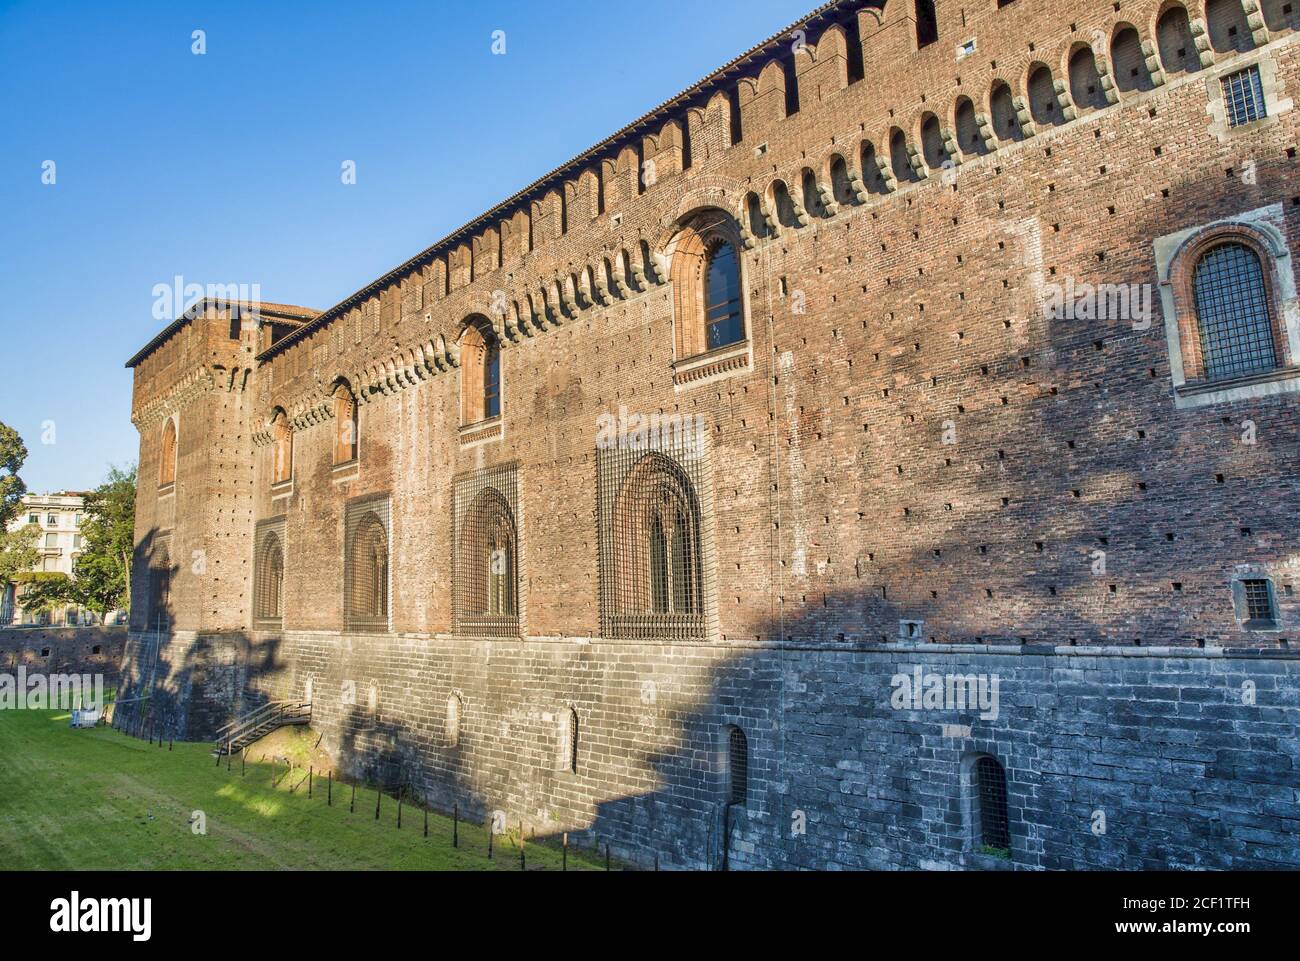 El Castillo Sforza - Castello Sforzesco en Milán, Italia. Foto de stock